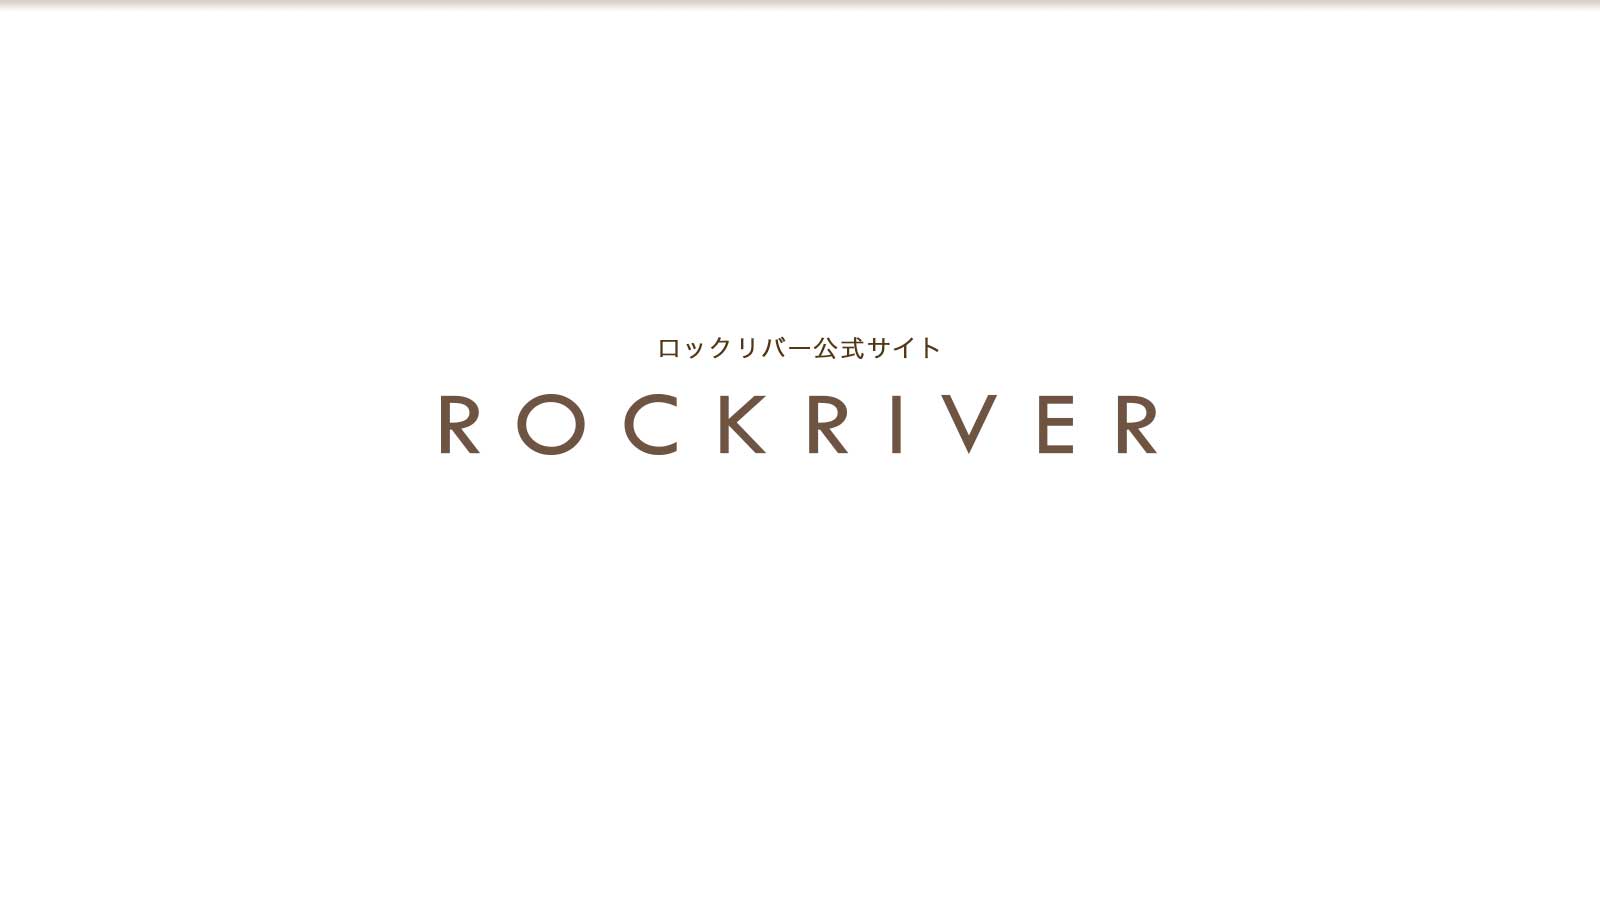 Rockriver ロックリバー公式サイト